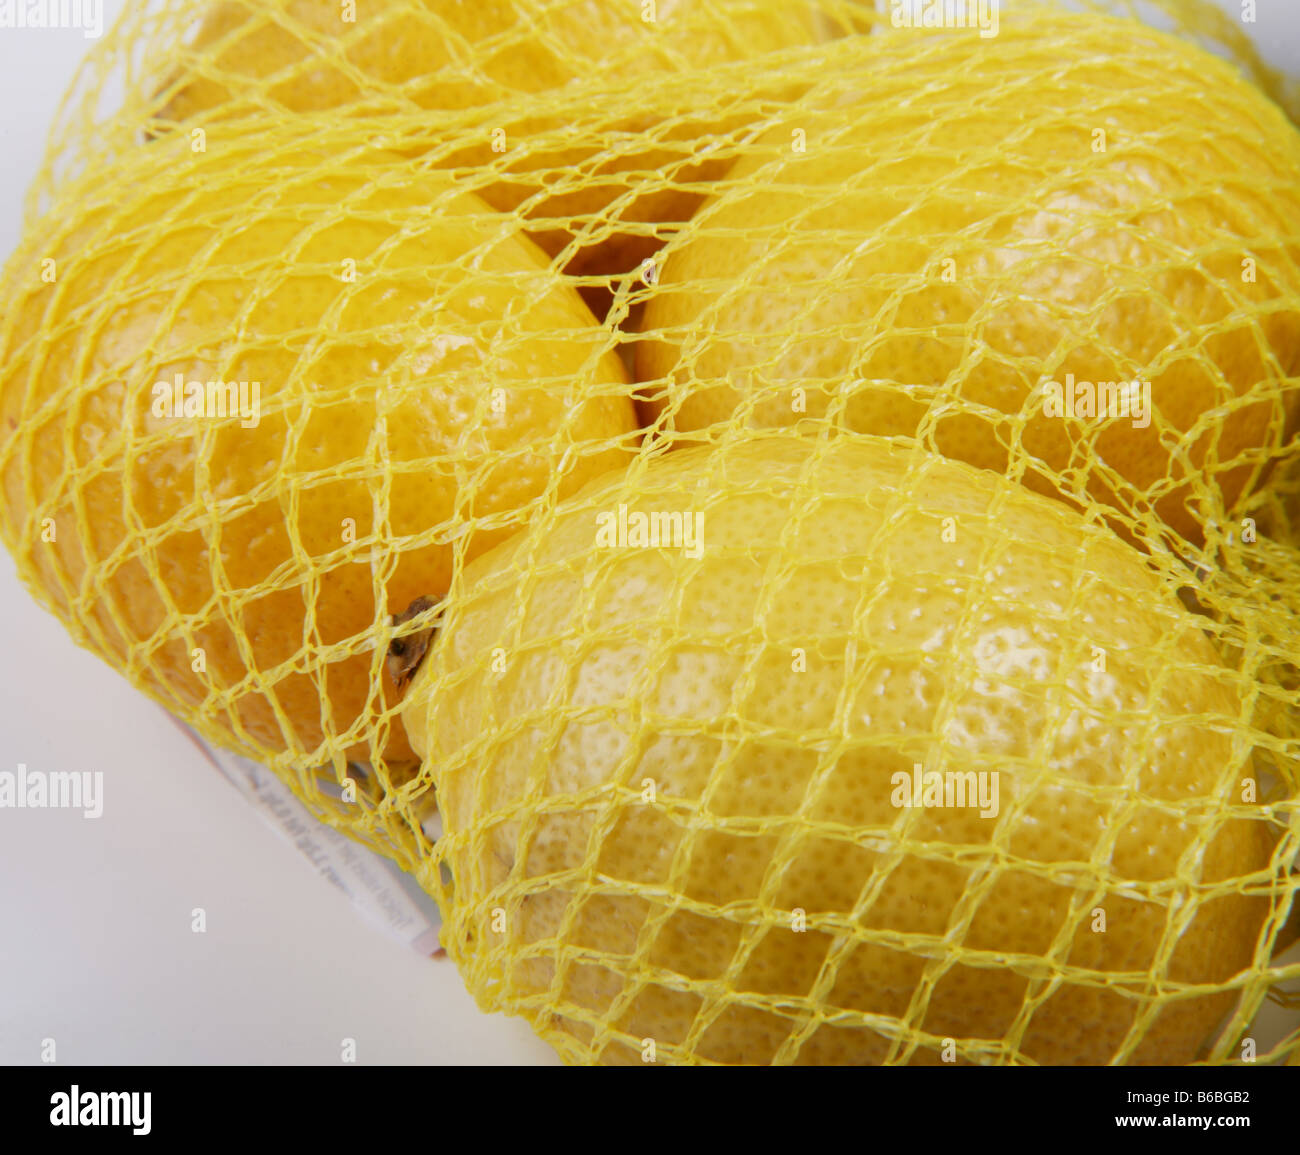 Red de supermercado comprado limones Foto de stock